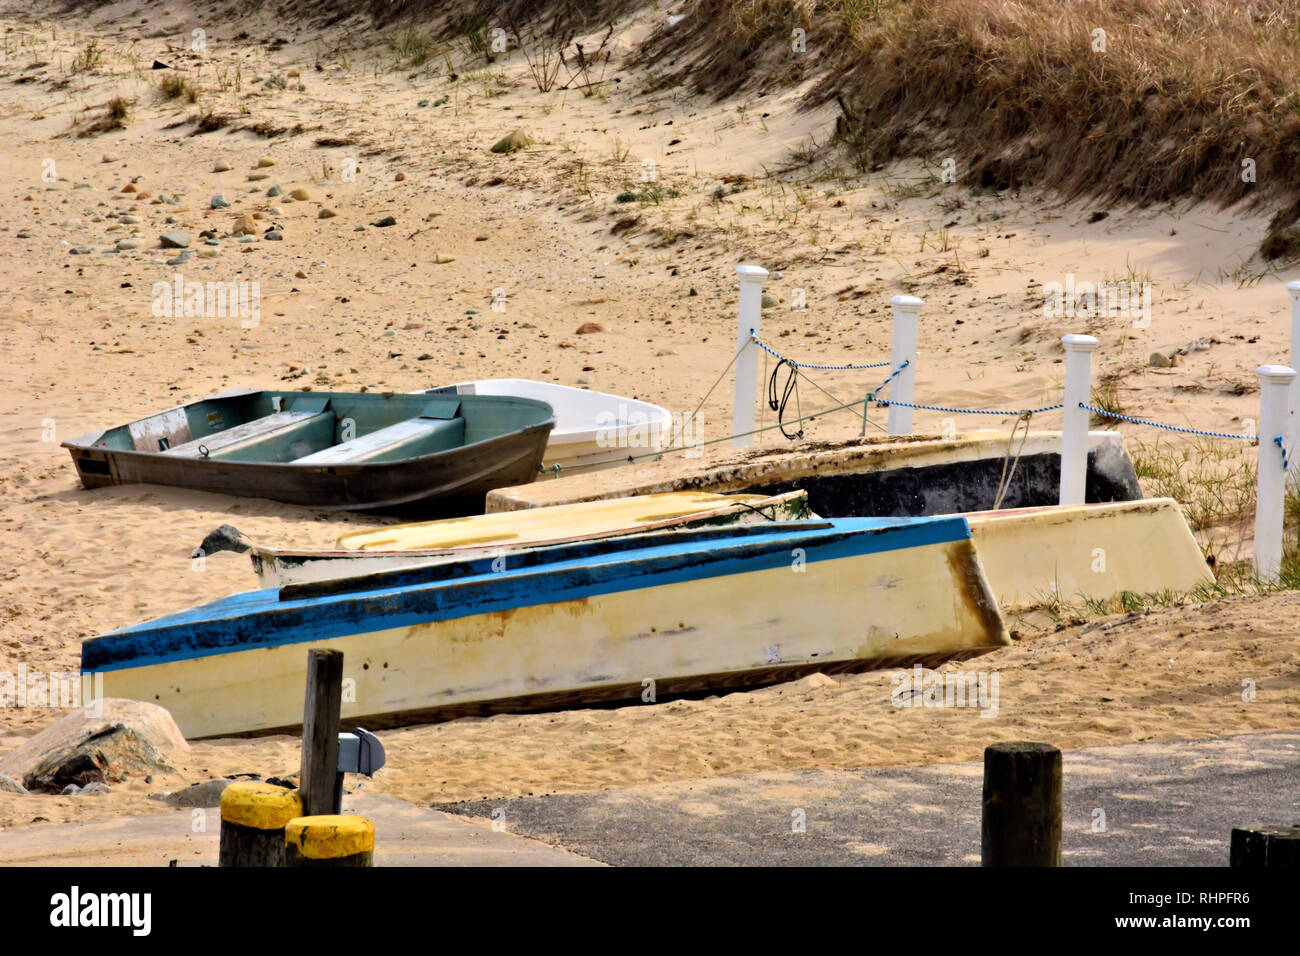 Botes de remos yacen abandonados en la playa Foto de stock